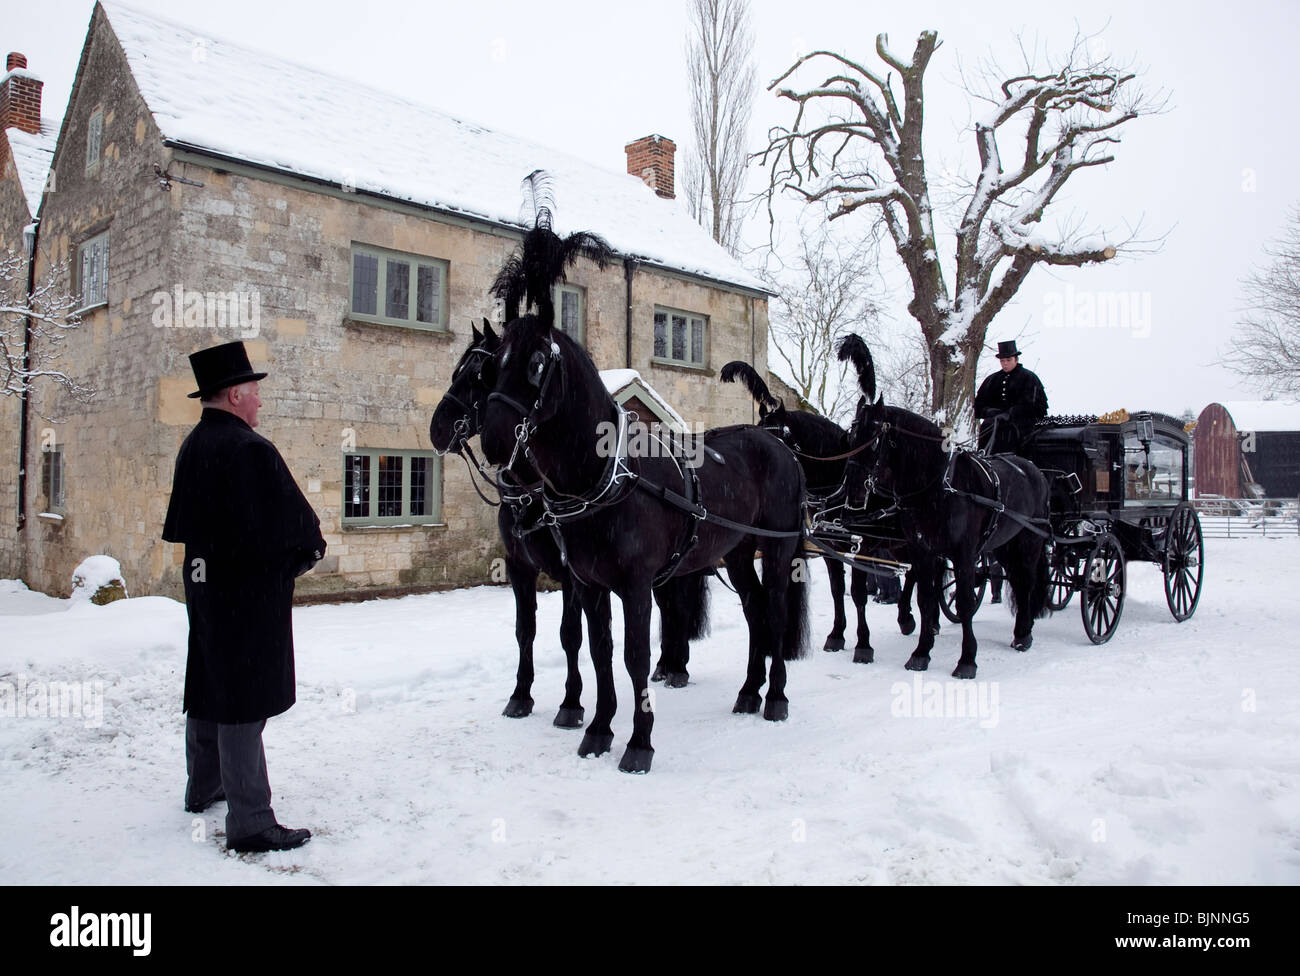 Dallo stile tradizionale trainato da cavalli carro funebre nella neve con quattro cavalli pronti a lasciare per un servizio di chiesa Foto Stock